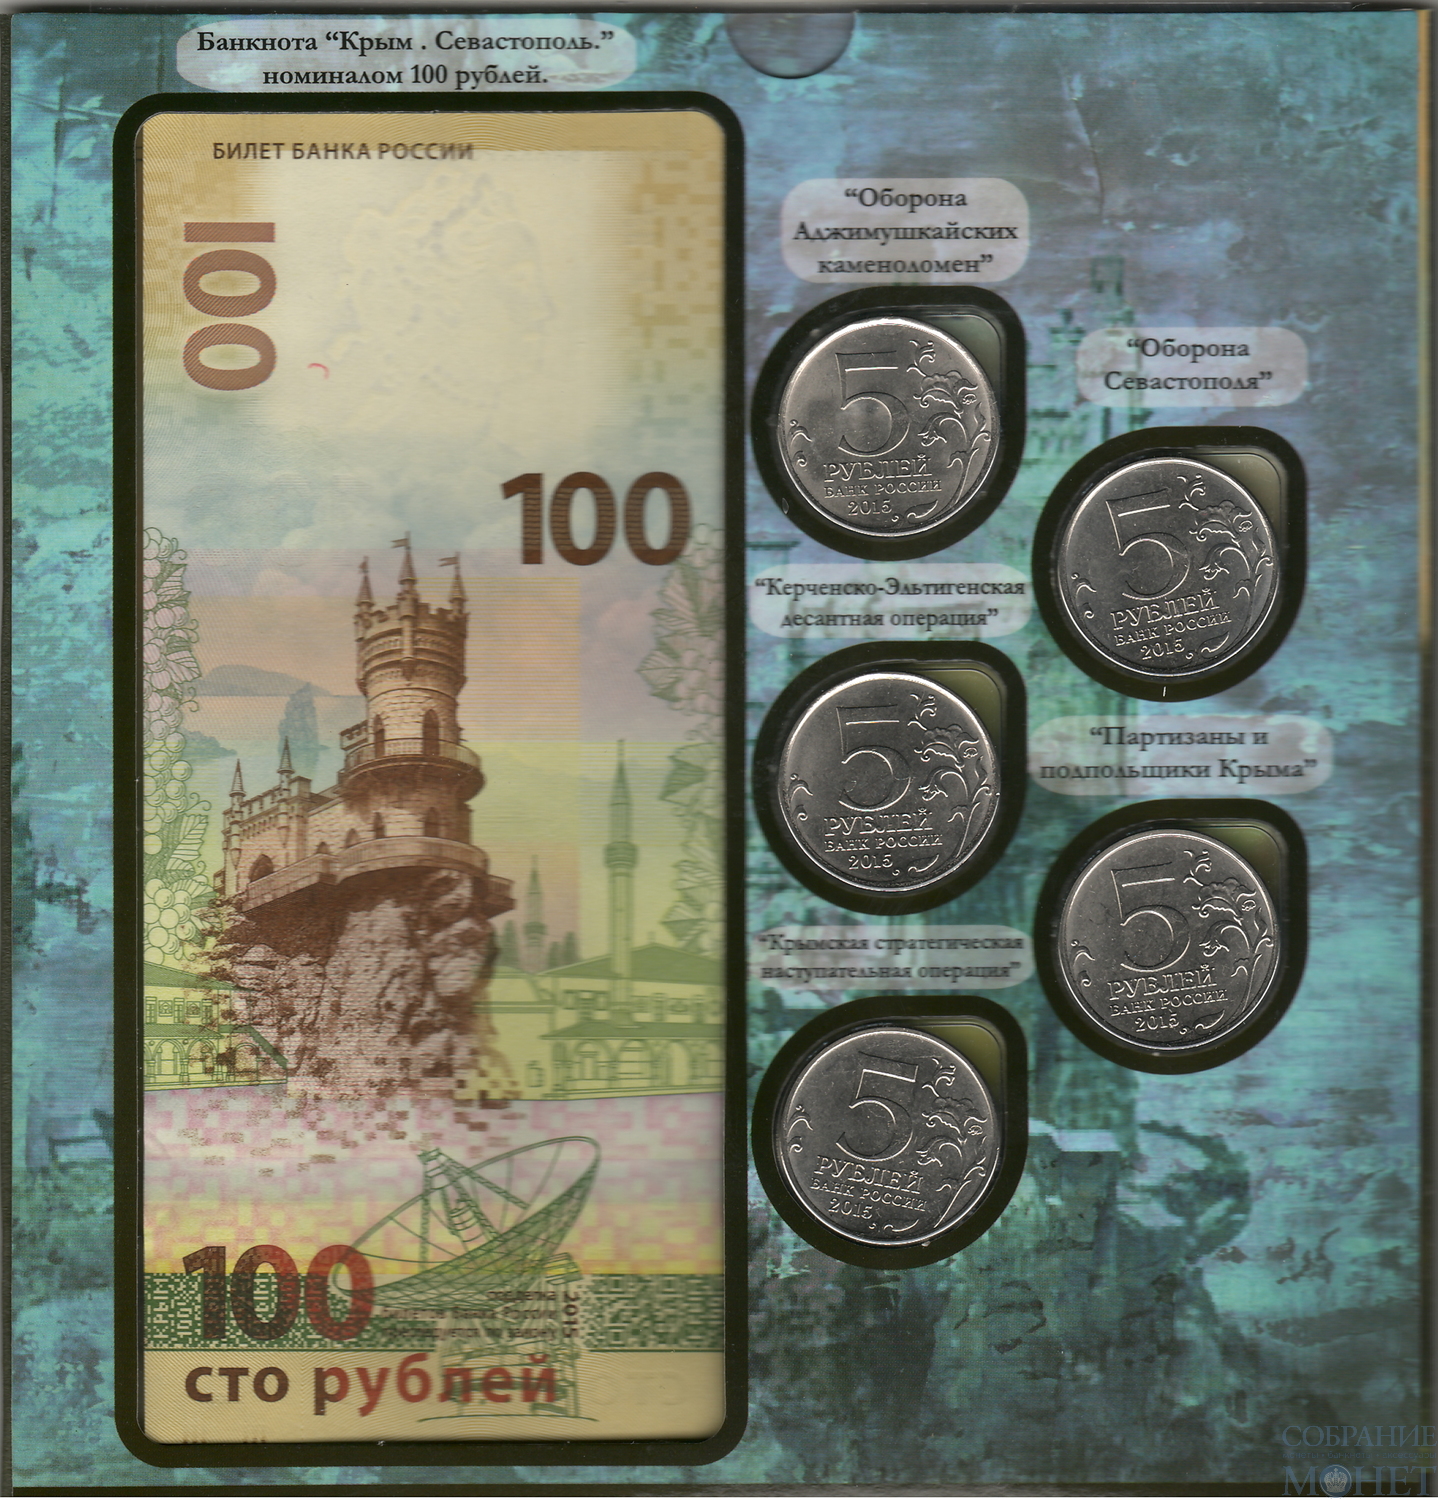 Набор монет и памятной банкноты